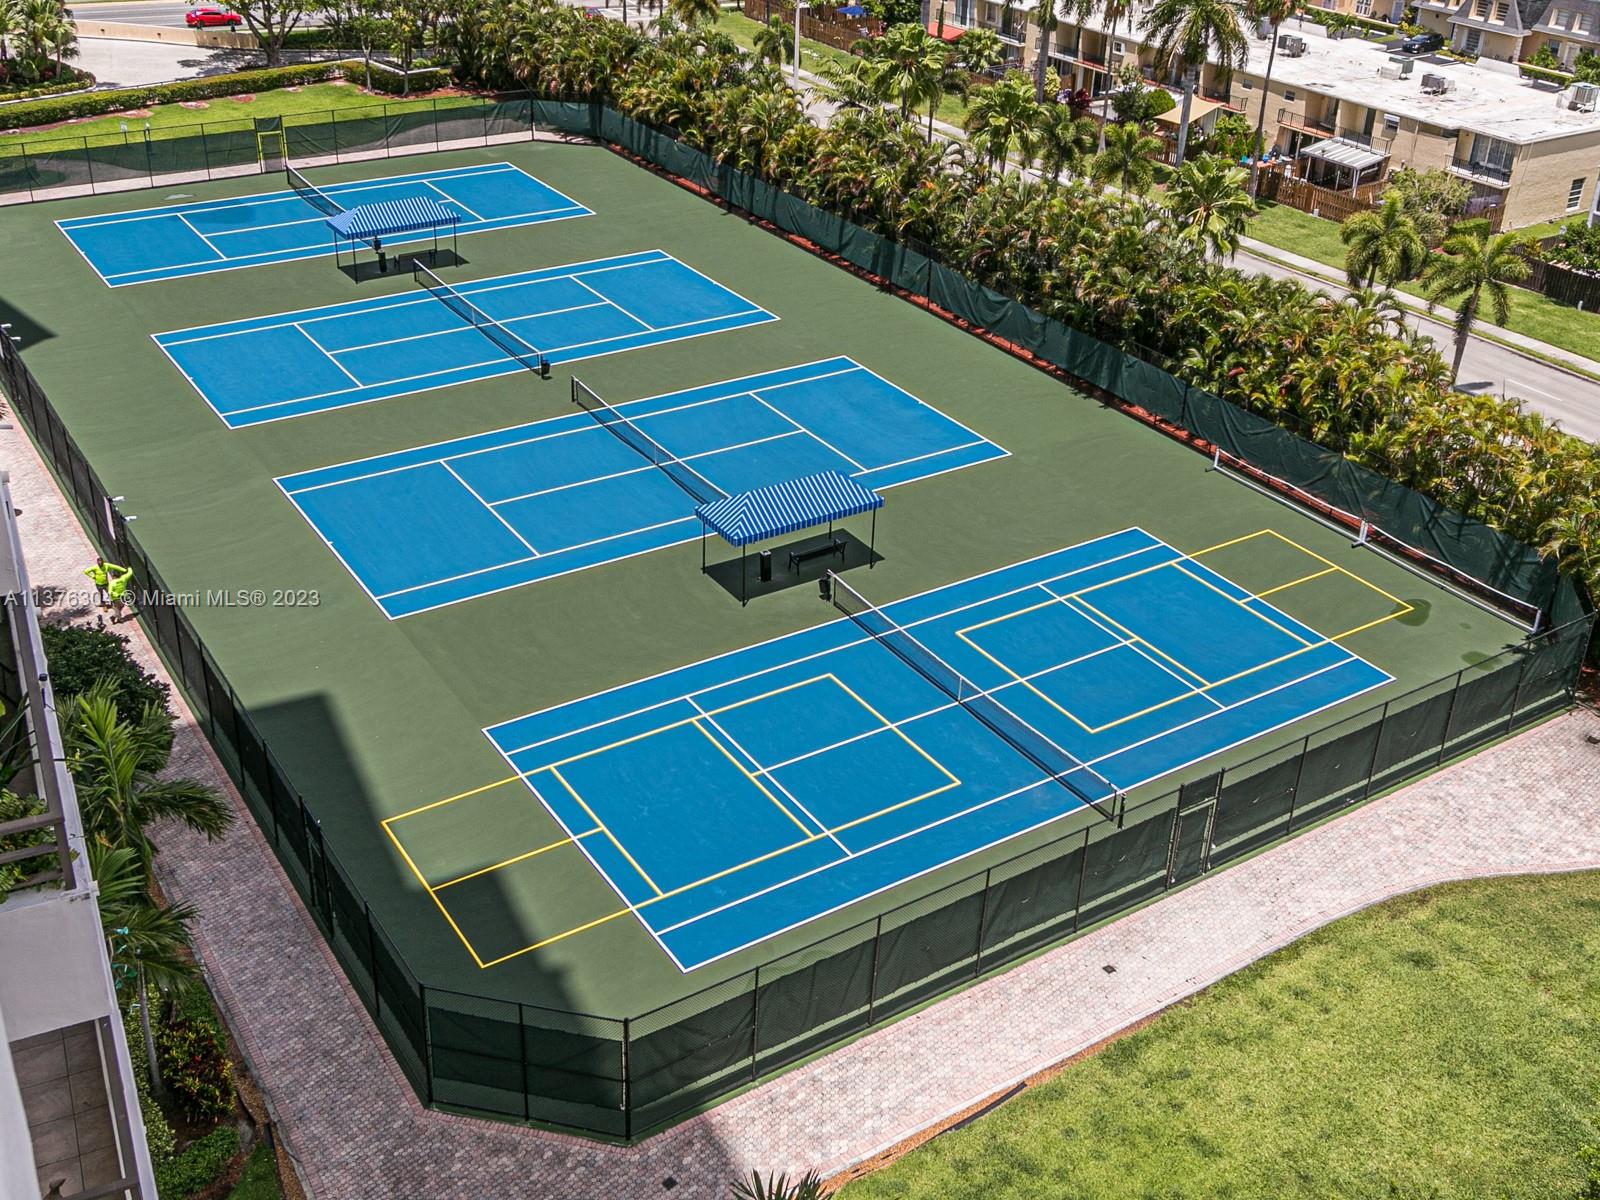 Tennis Court
